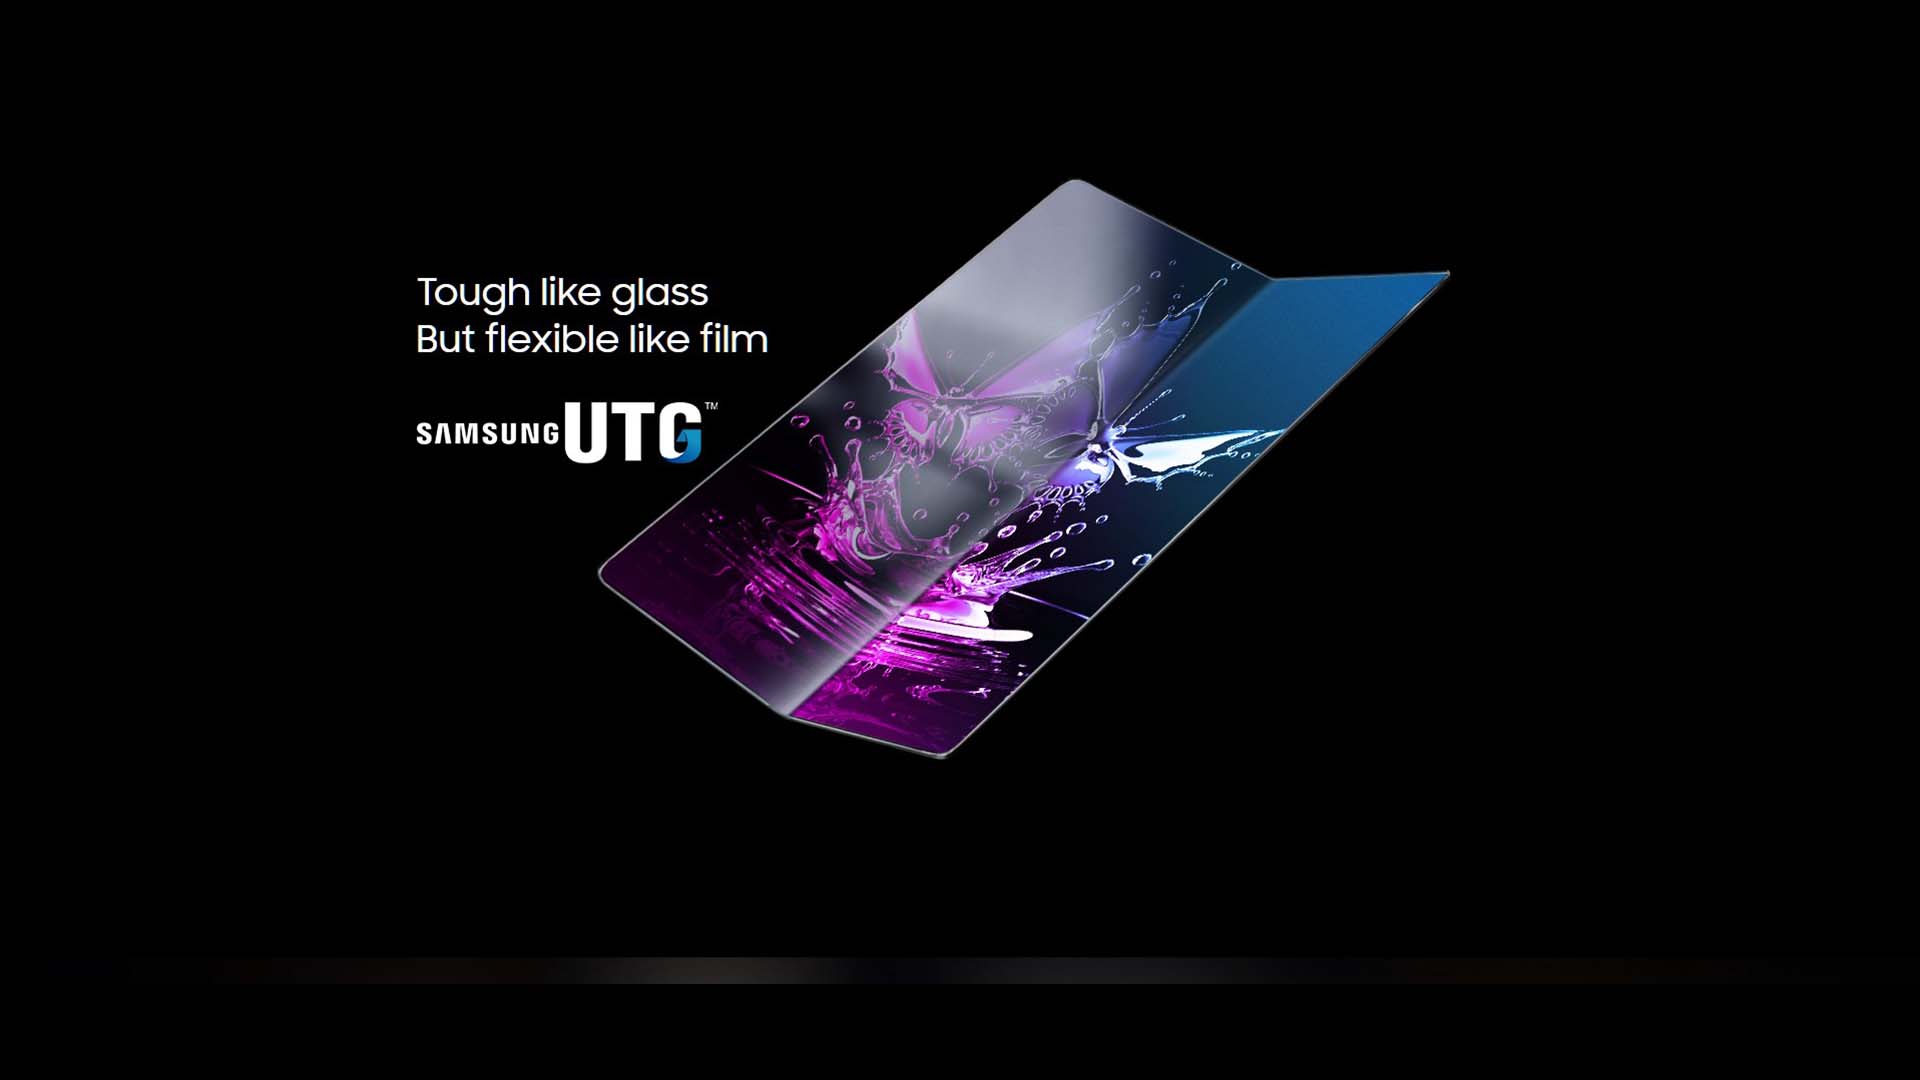 Samsung UTG Foldable OLED Display